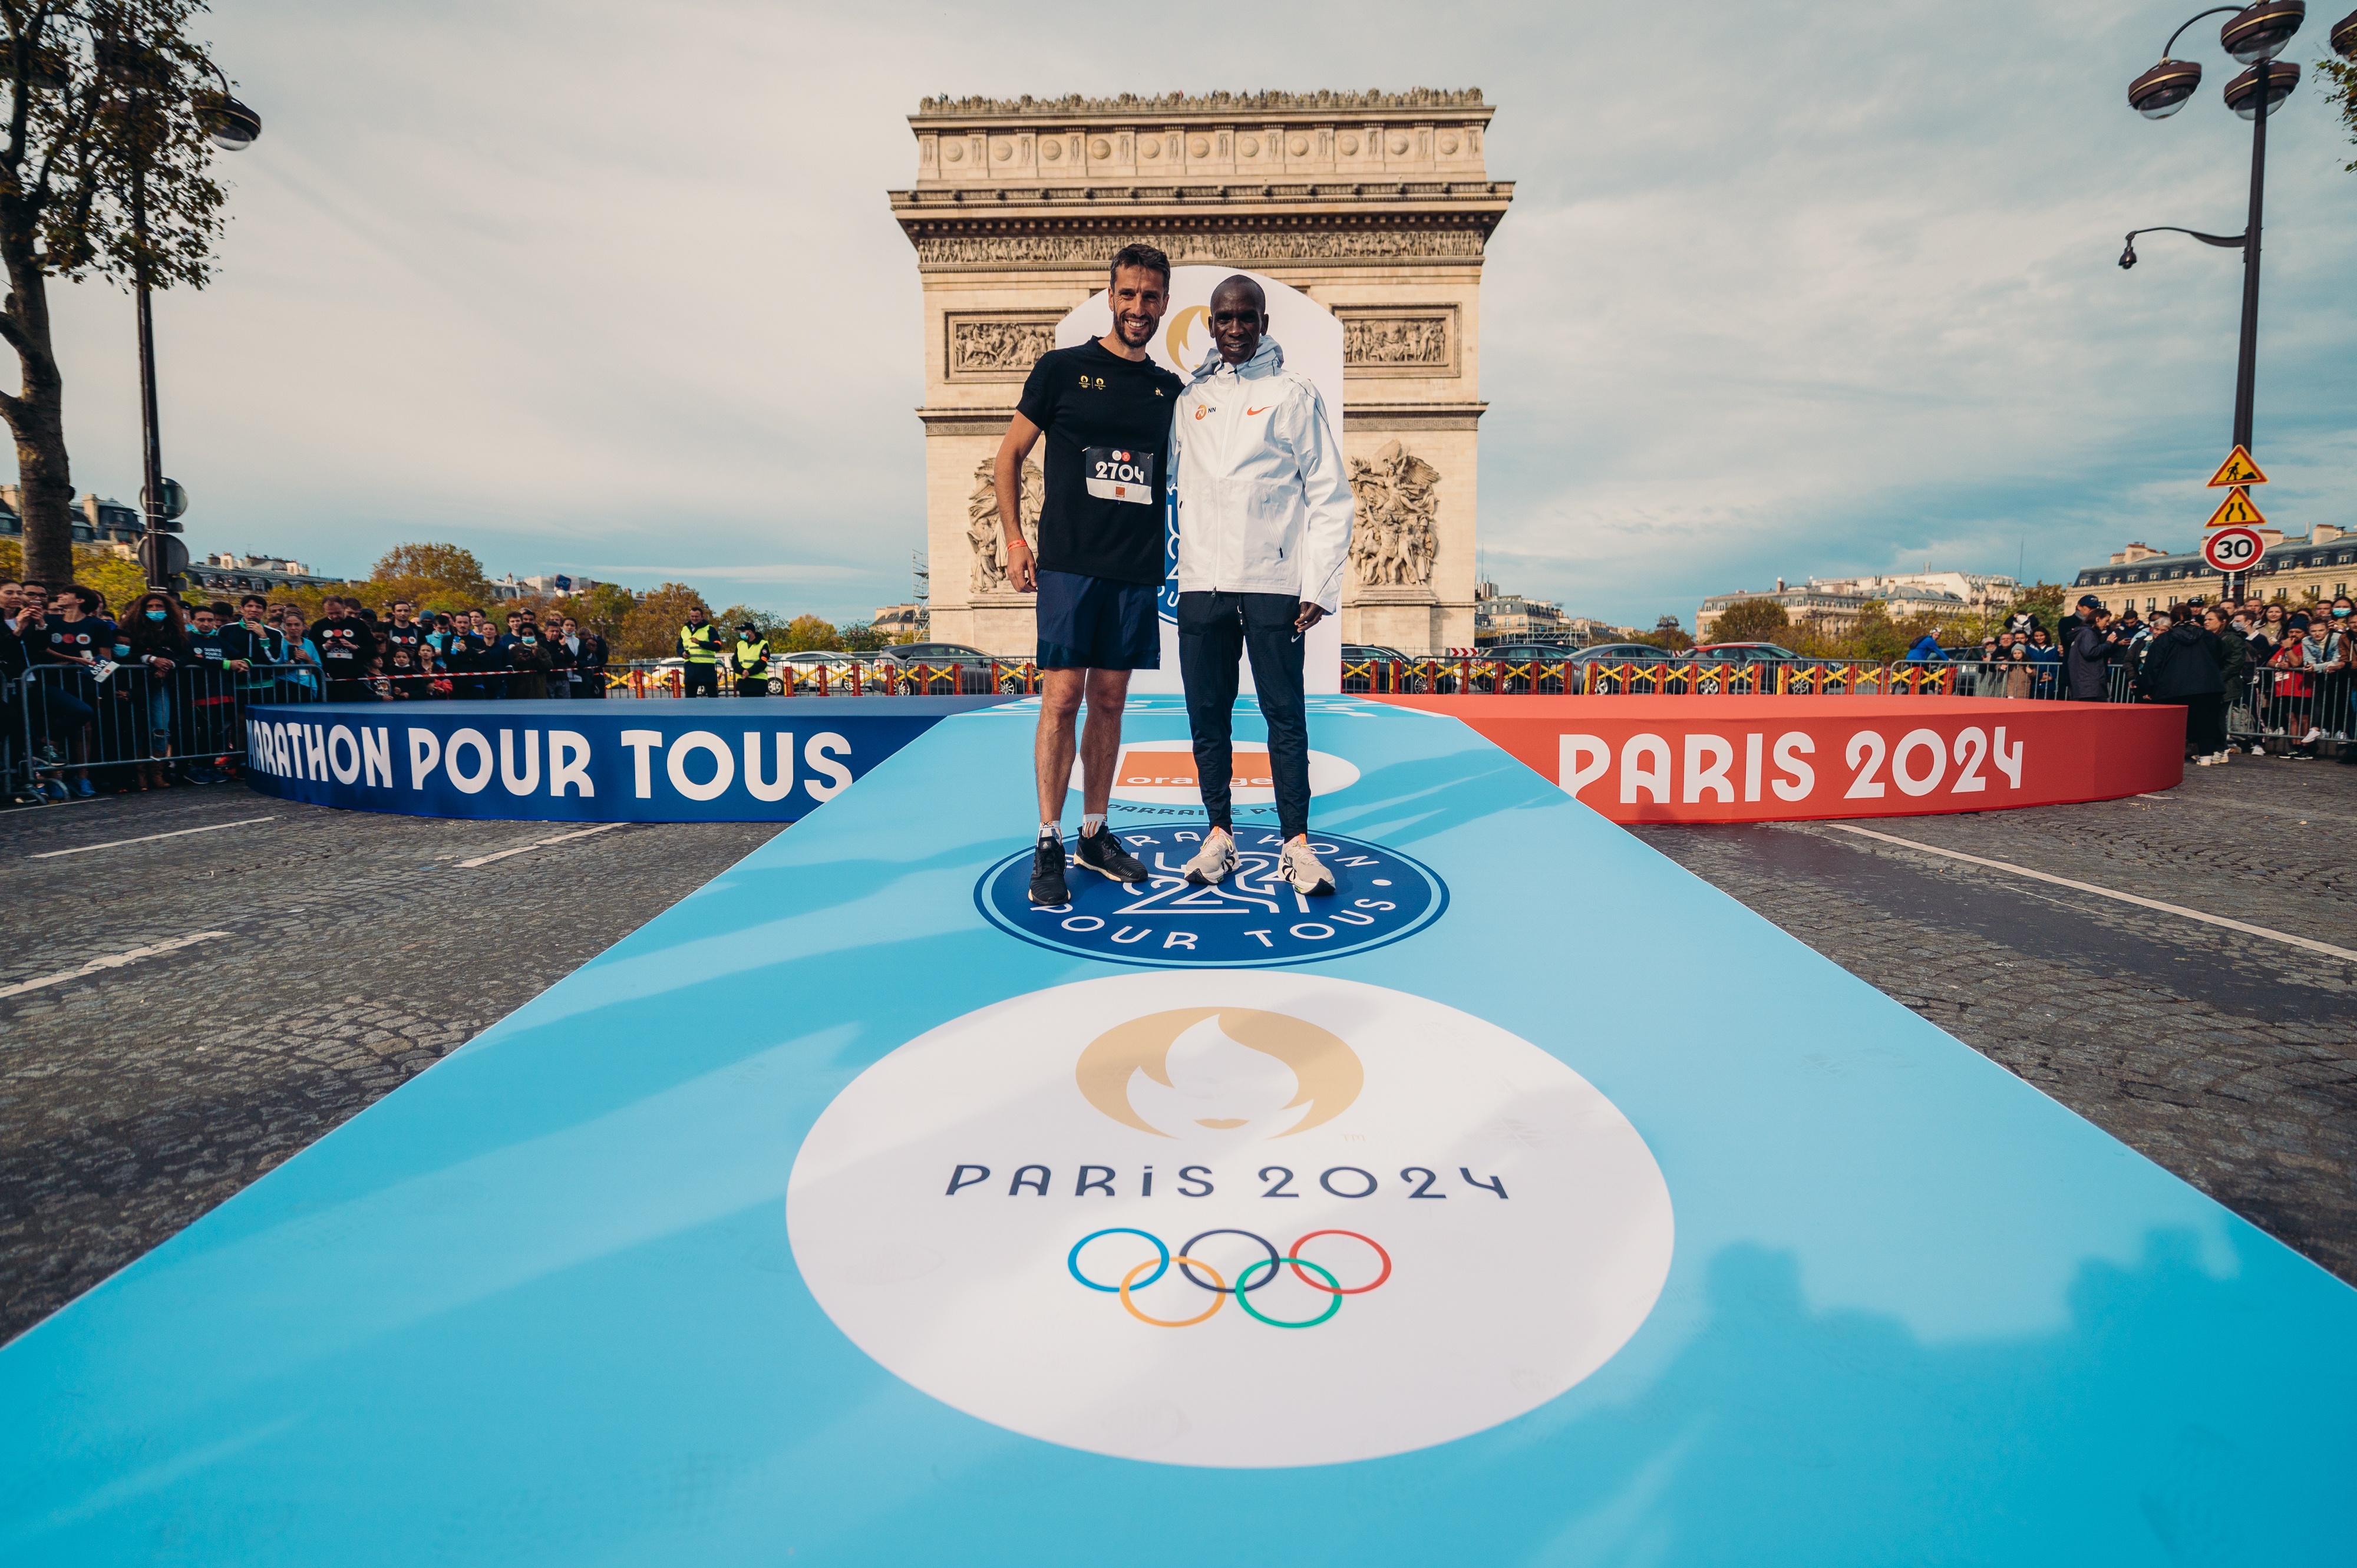 Paris 2024 Marathon pour Tous - Eliud Kipchoge © BOBY 1.jpg